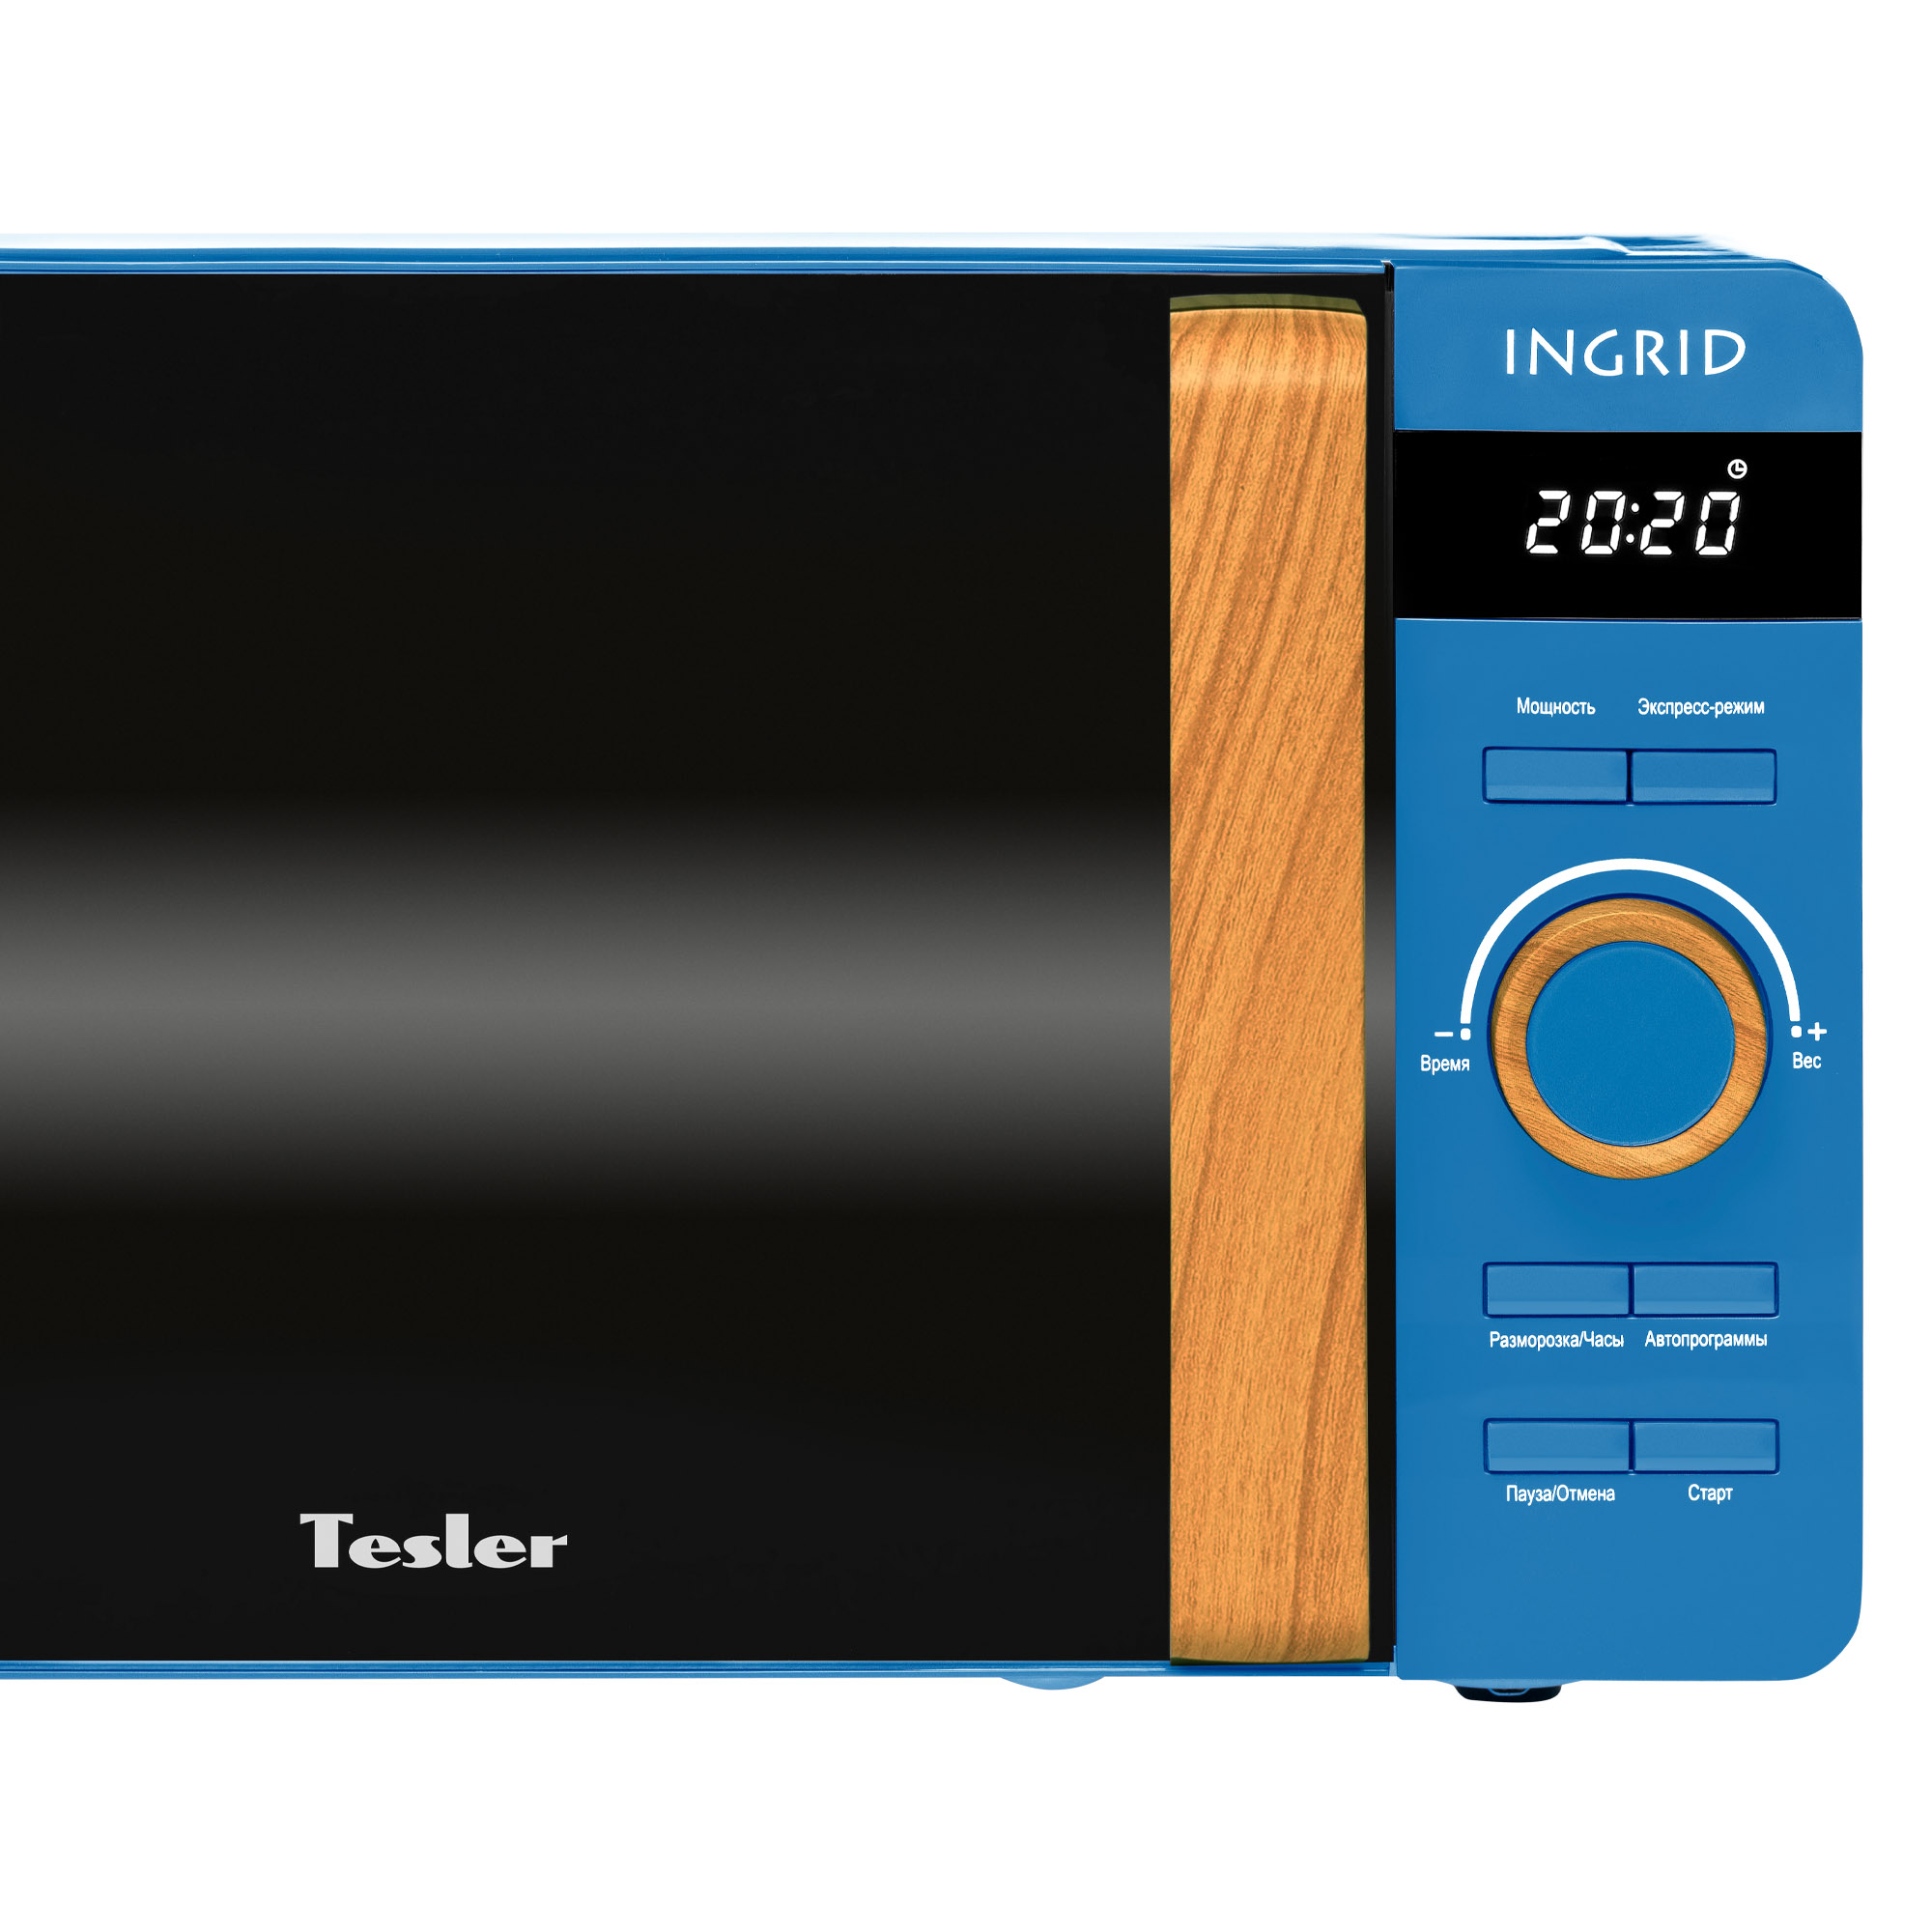 Tesler INGRID ME-2044 FJORD BLUE | Tesler-Electronics